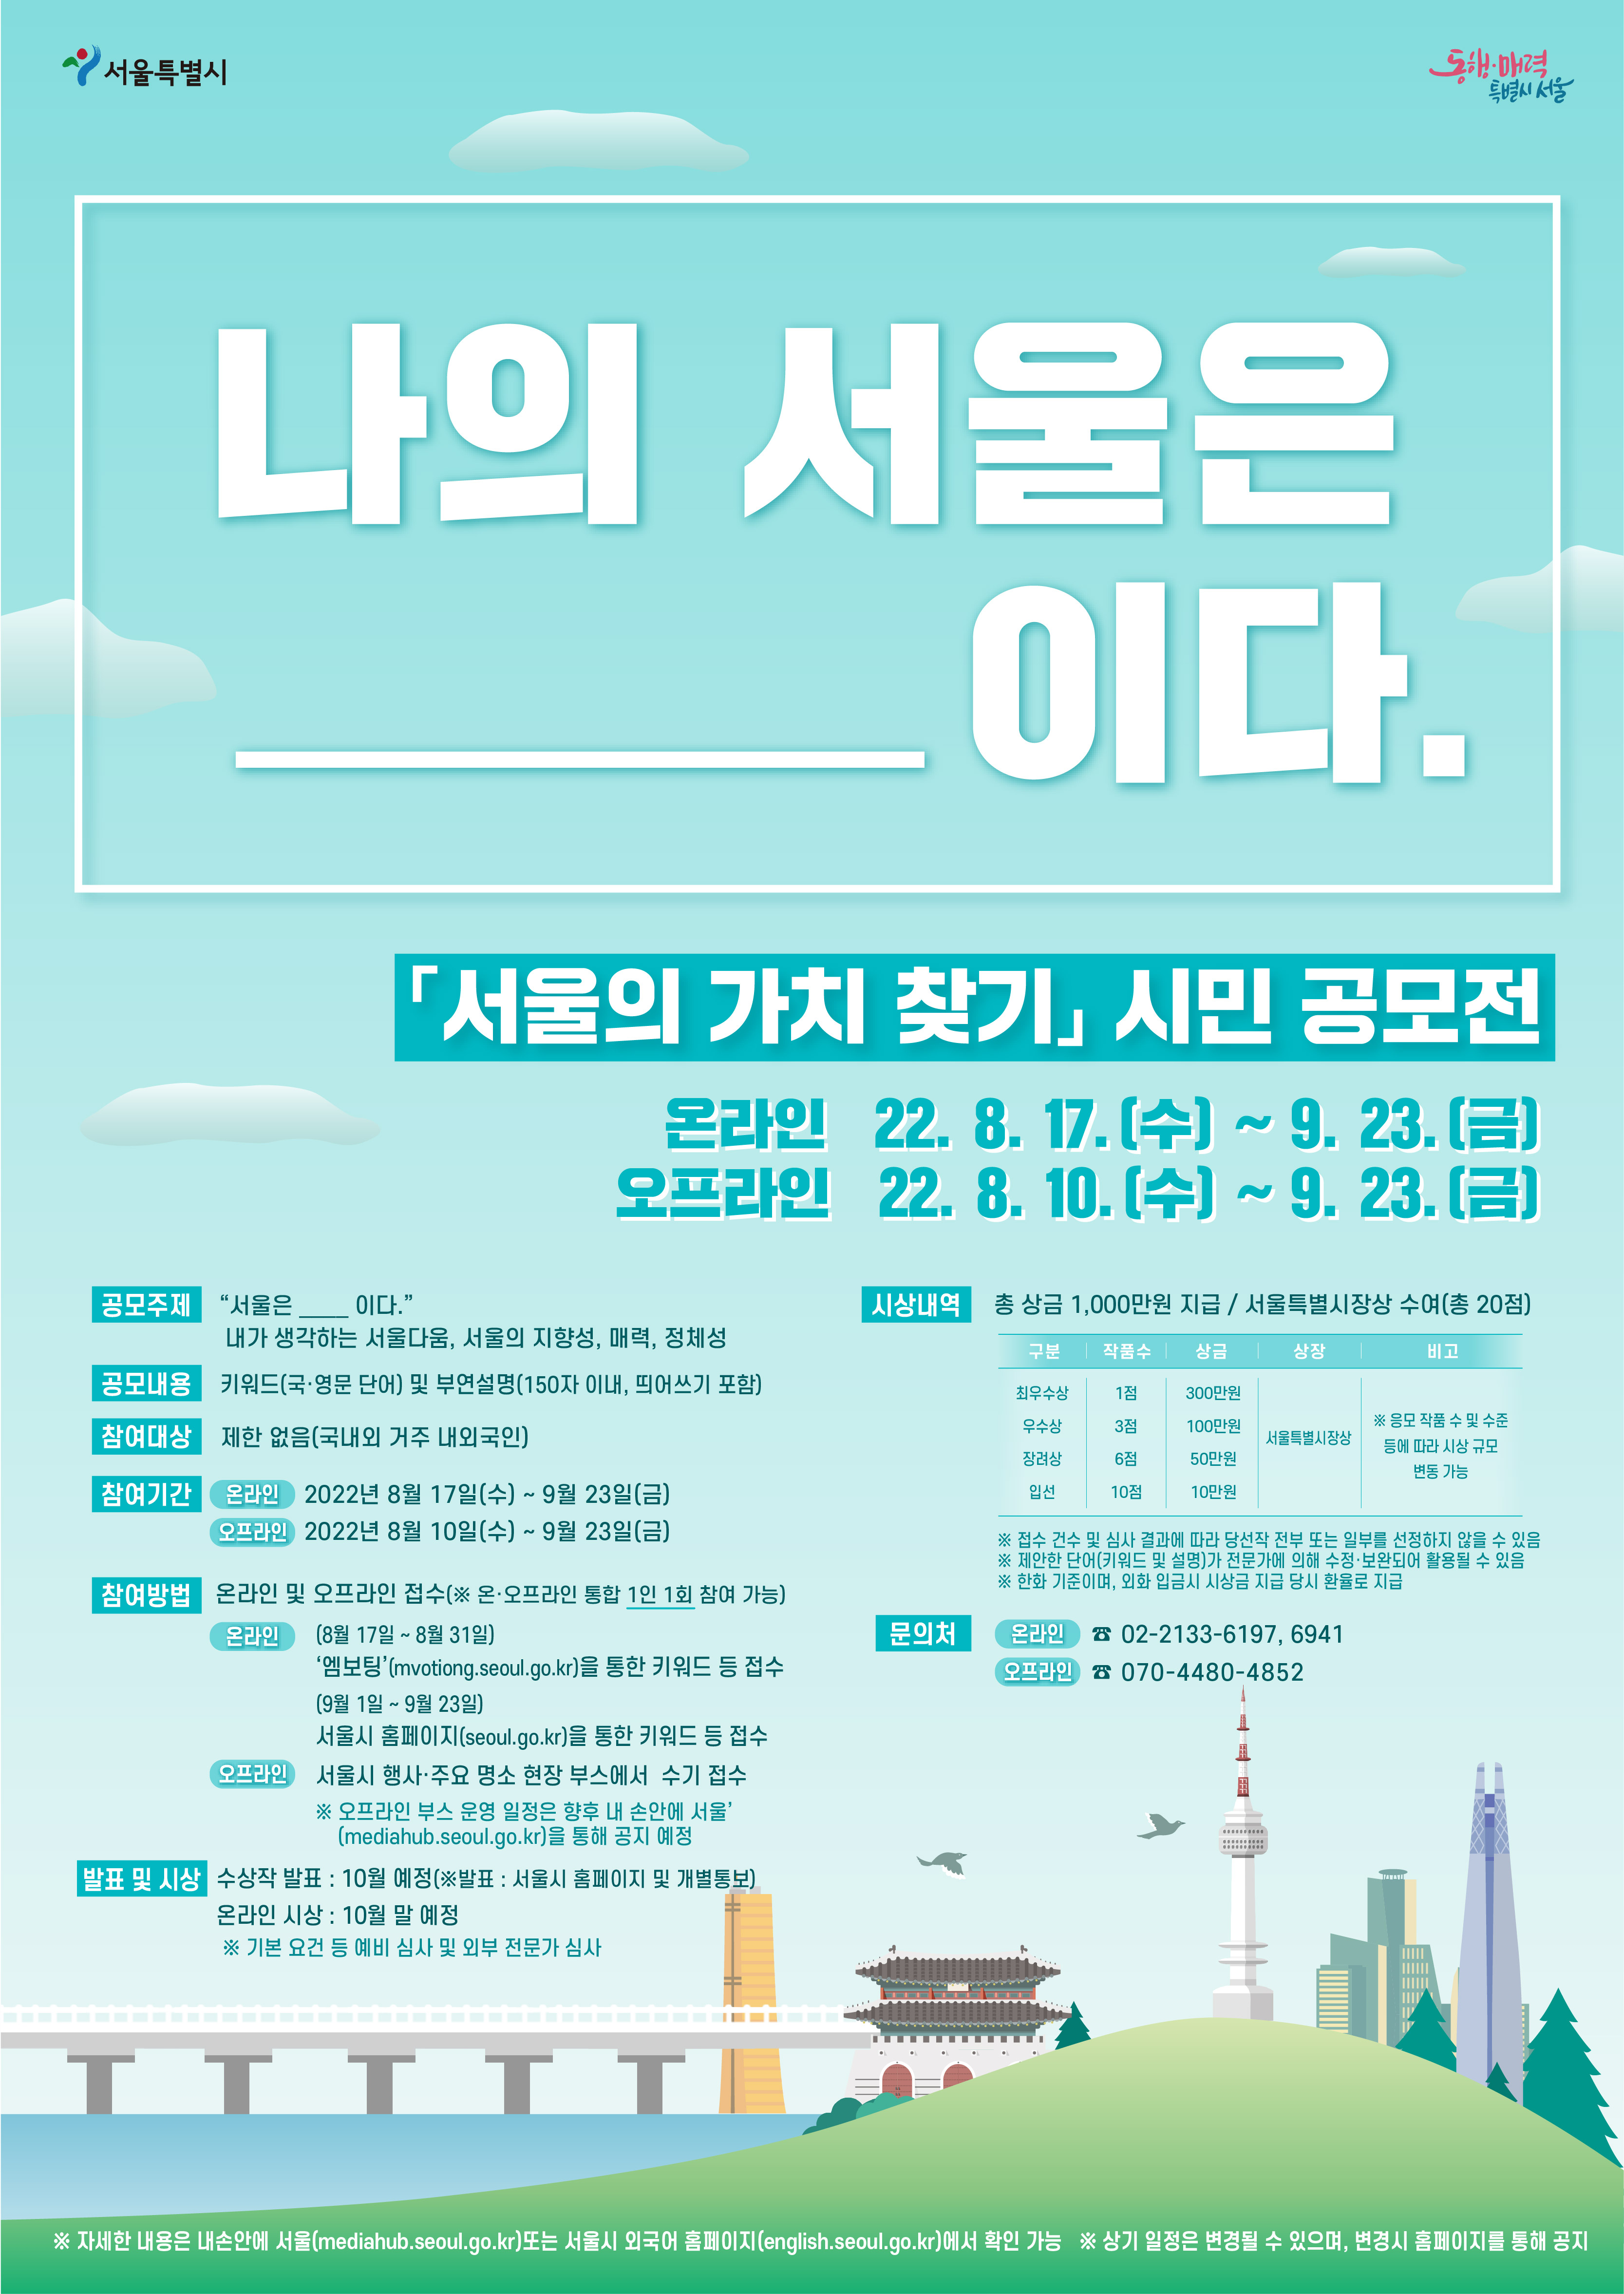 나의 서울은 _____이다 『서울의 가치 찾기』 사진 공모전 온라인 22년 8월 17일 수요일부터 8월 31일 수요일까지 오프라인 22년 8월 10일 수요일부터 9월 23일 금요일까지